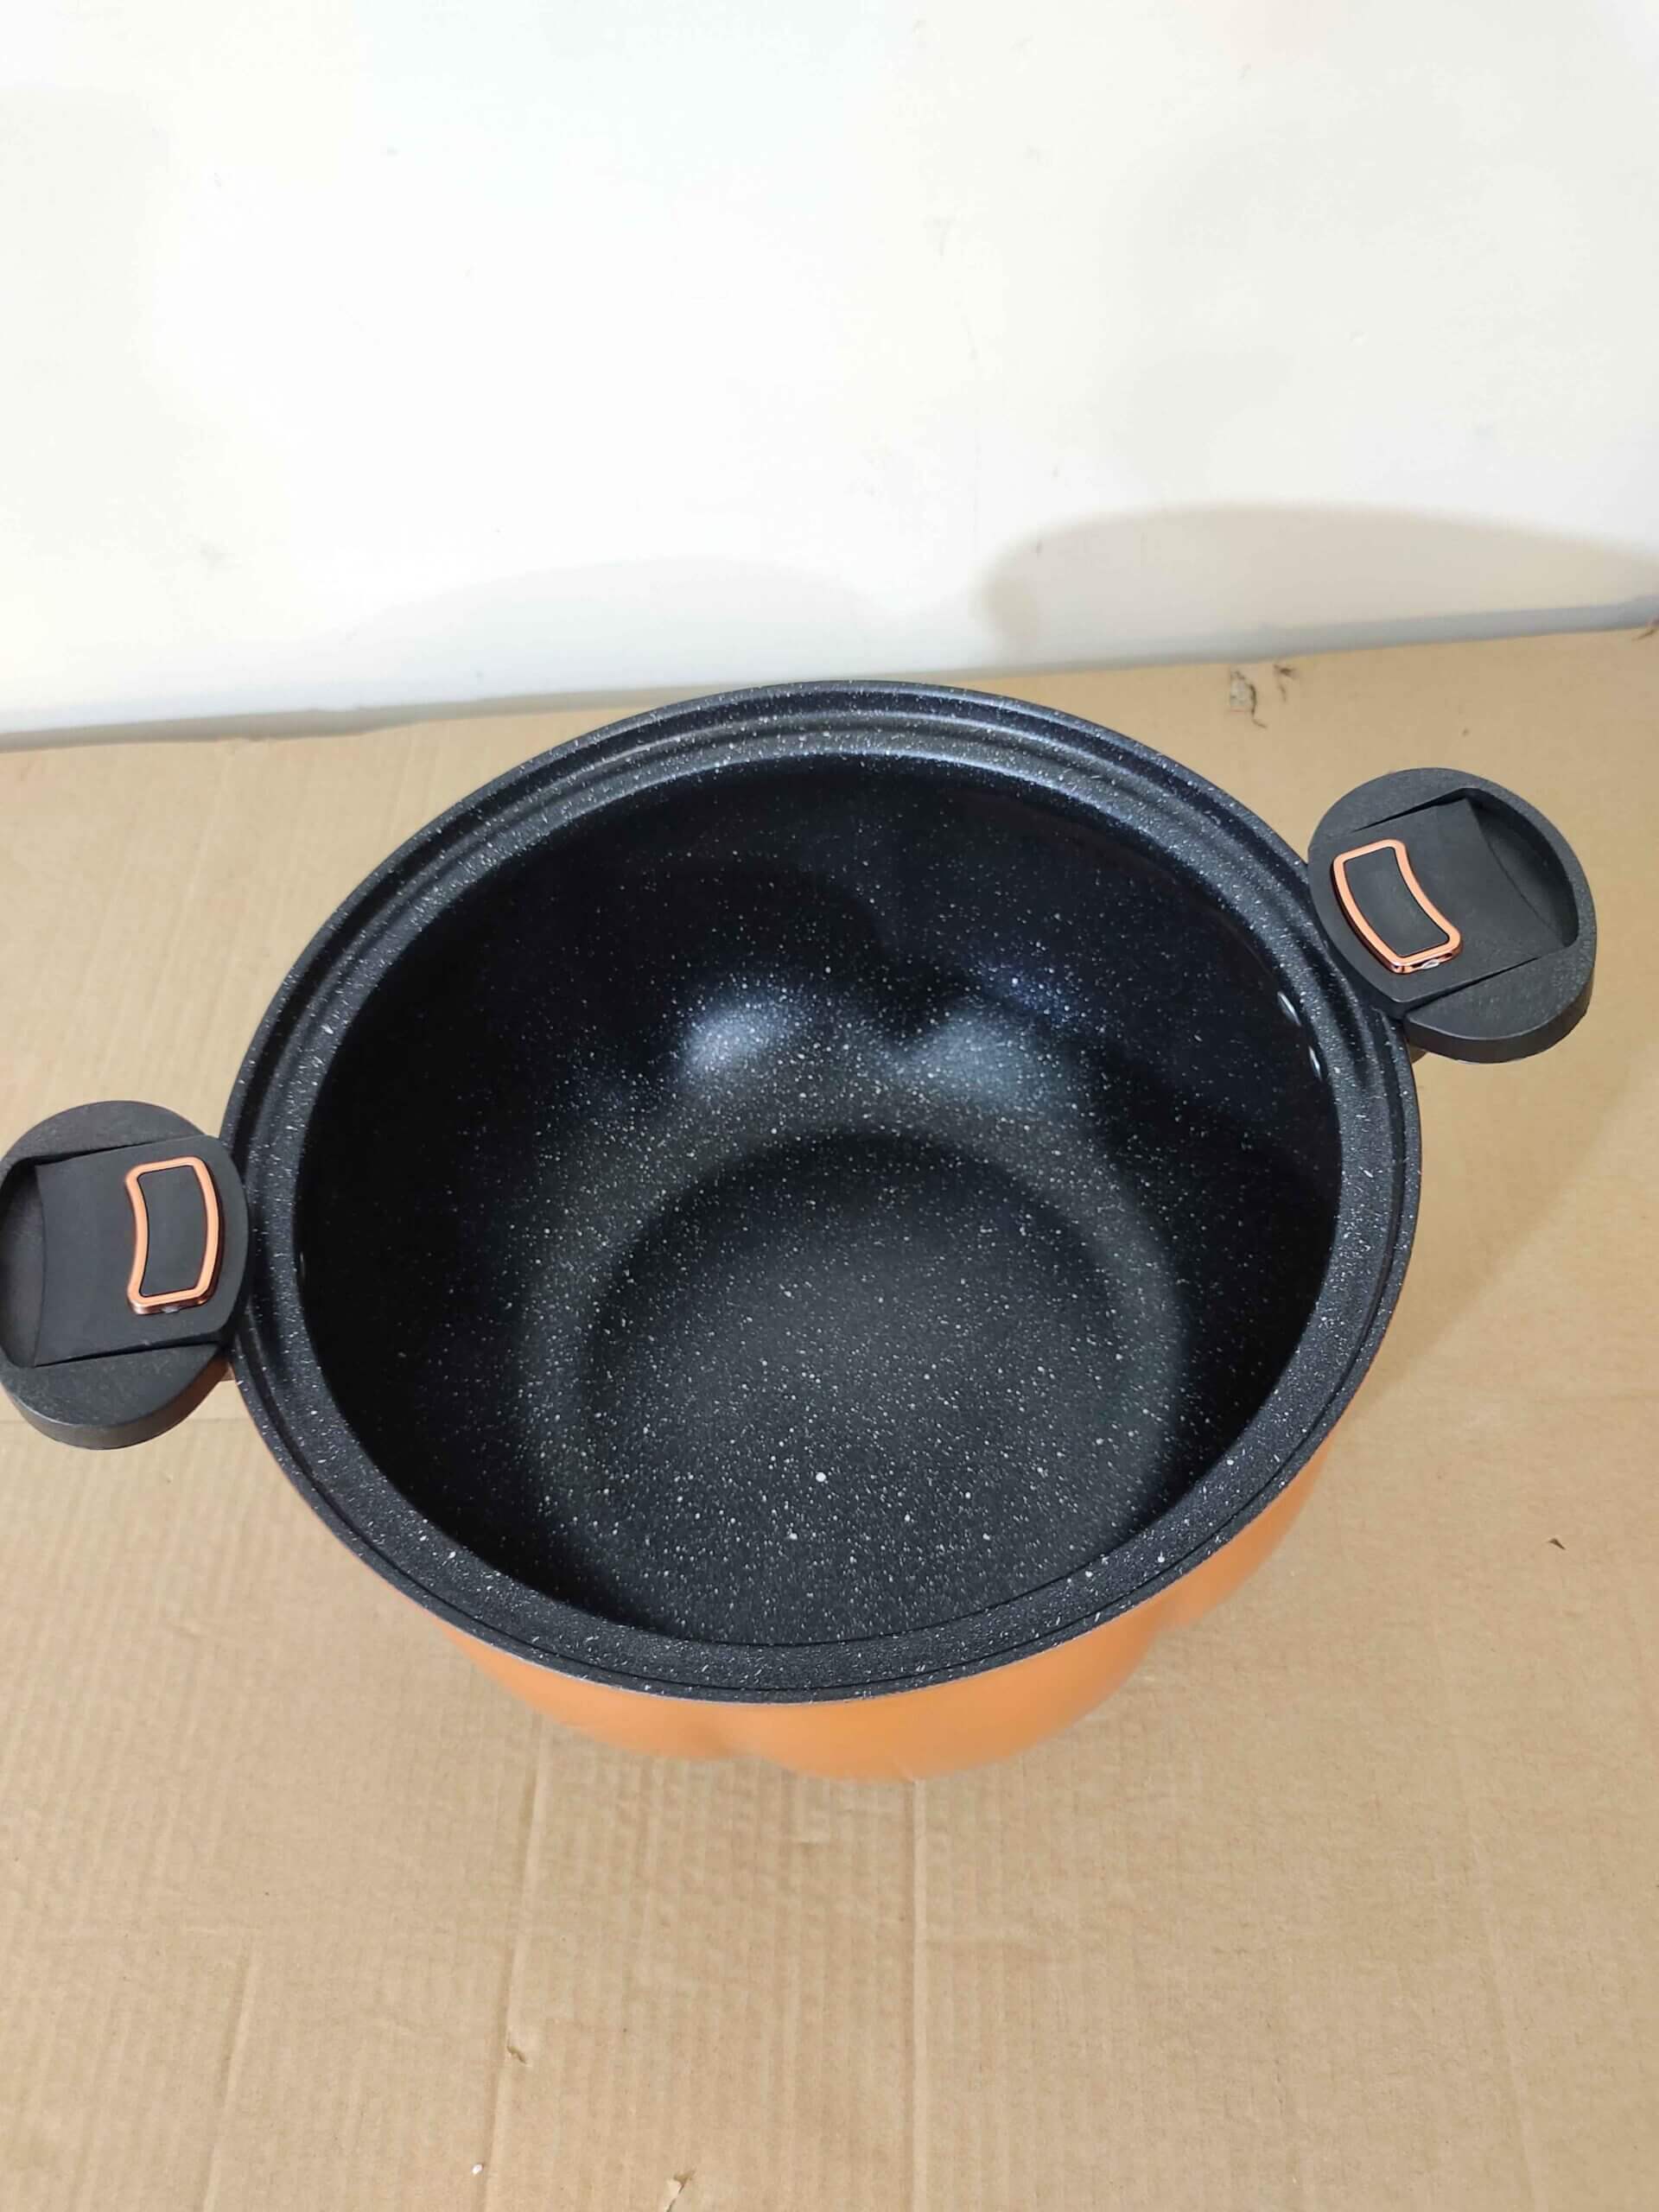 Mini Pressure Cooker Cooking Pot 6L